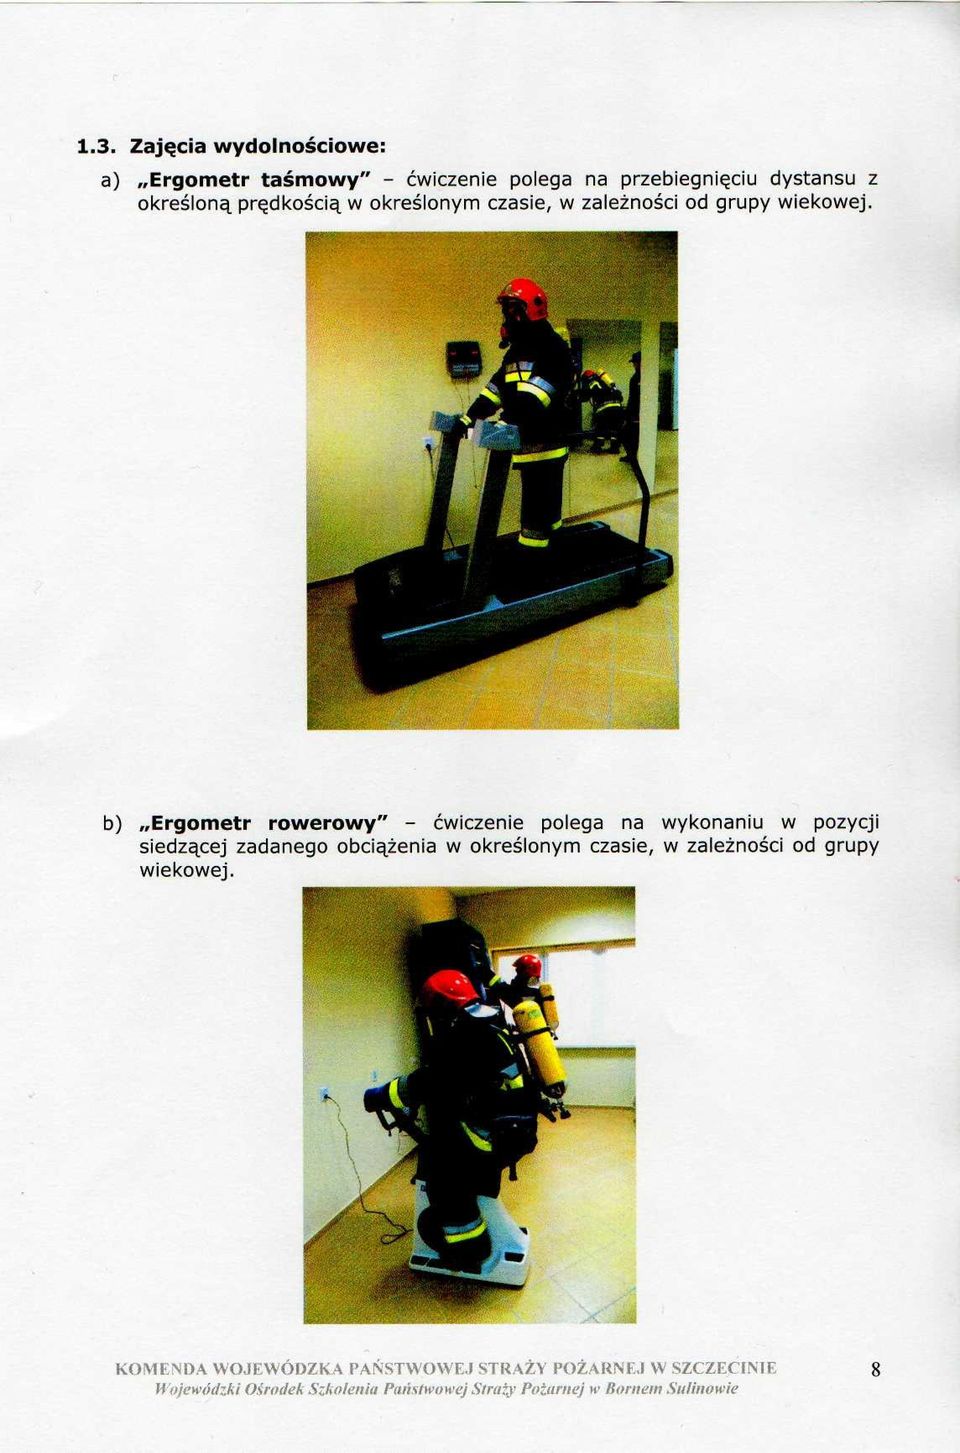 b) Ergometr rowerowy" - ćwiczenie polega na wykonaniu w pozycji siedzącej zadanego obciążenia w określonym